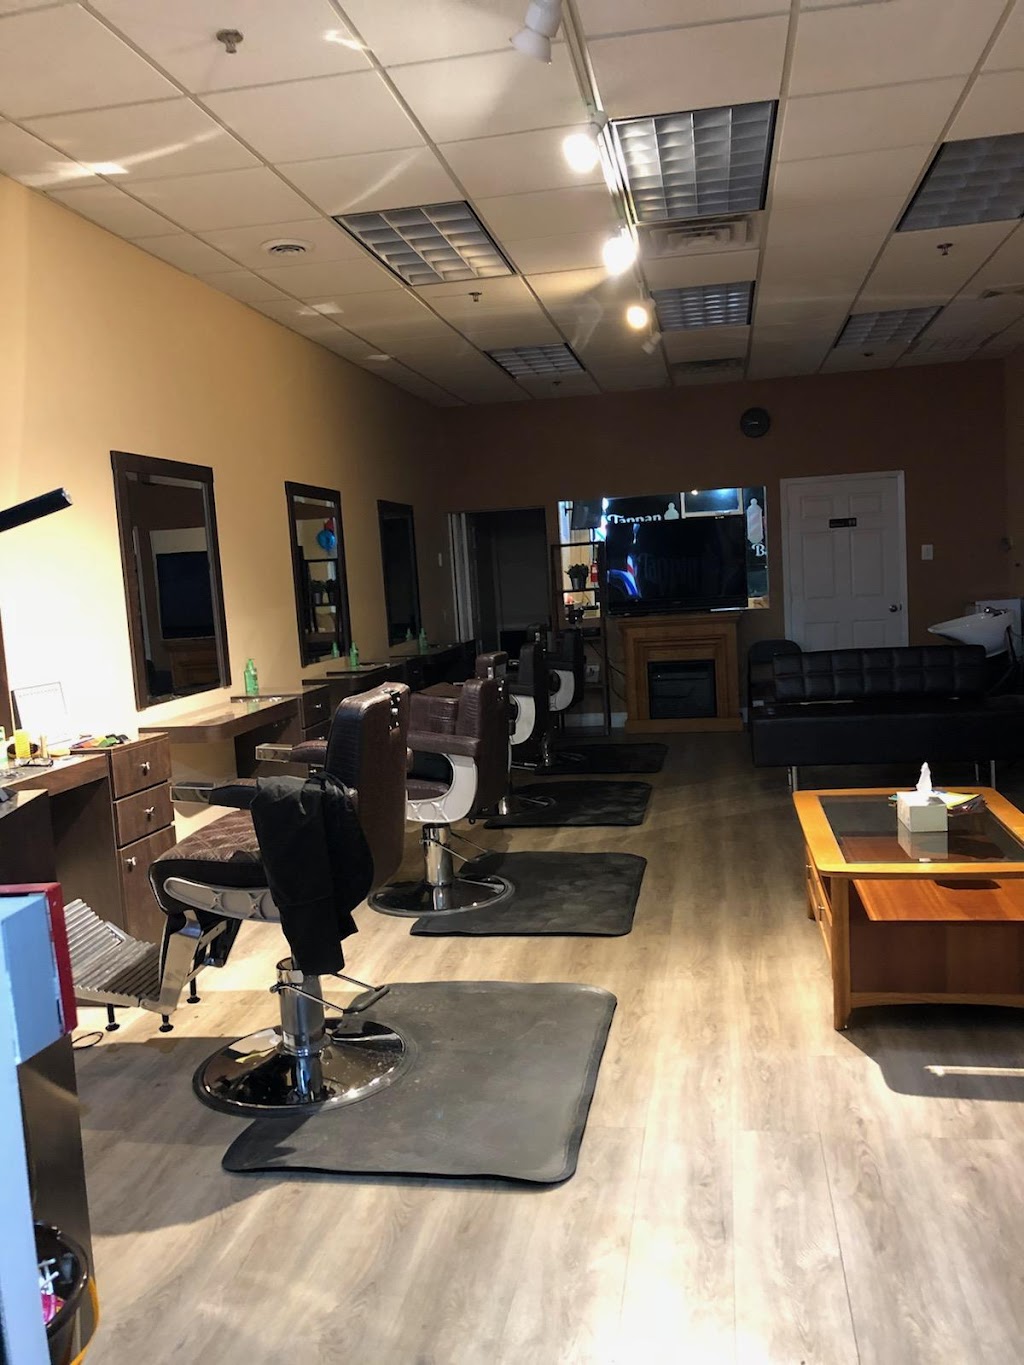 Tappan zee barbershop | 580 NY-303, Blauvelt, NY 10913 | Phone: (845) 848-2090